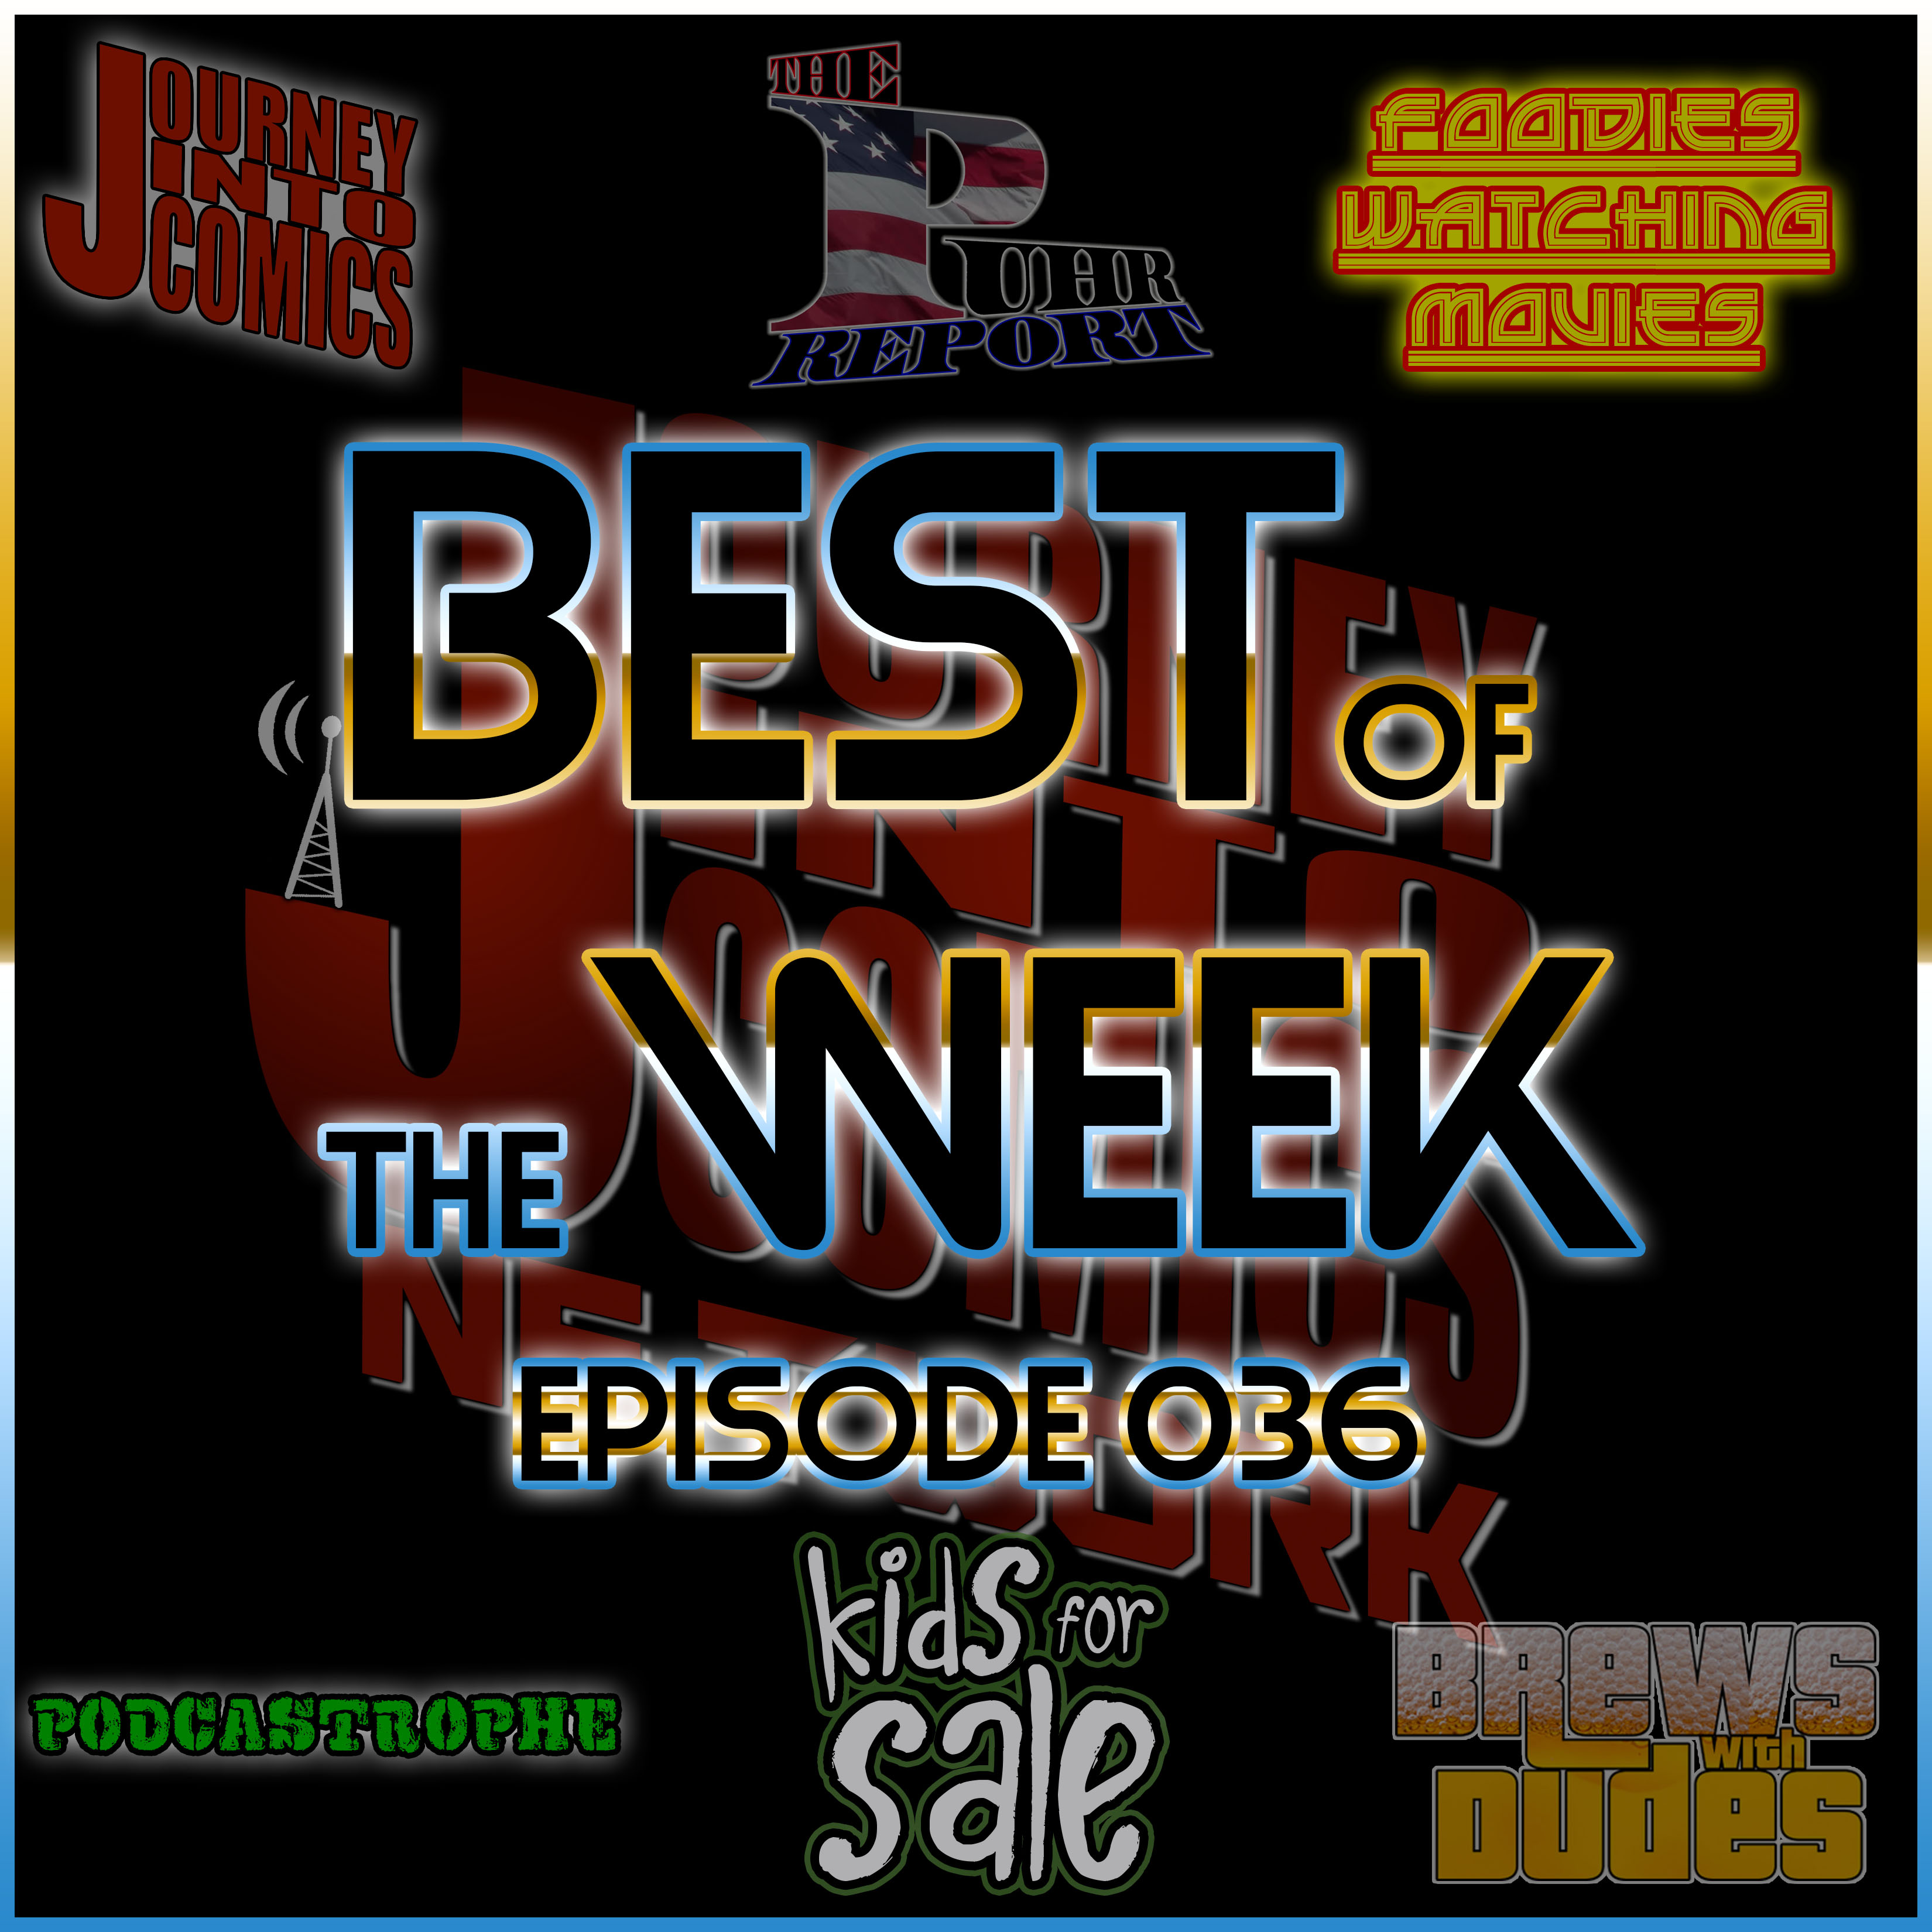 Best of the Week - 06/11/18